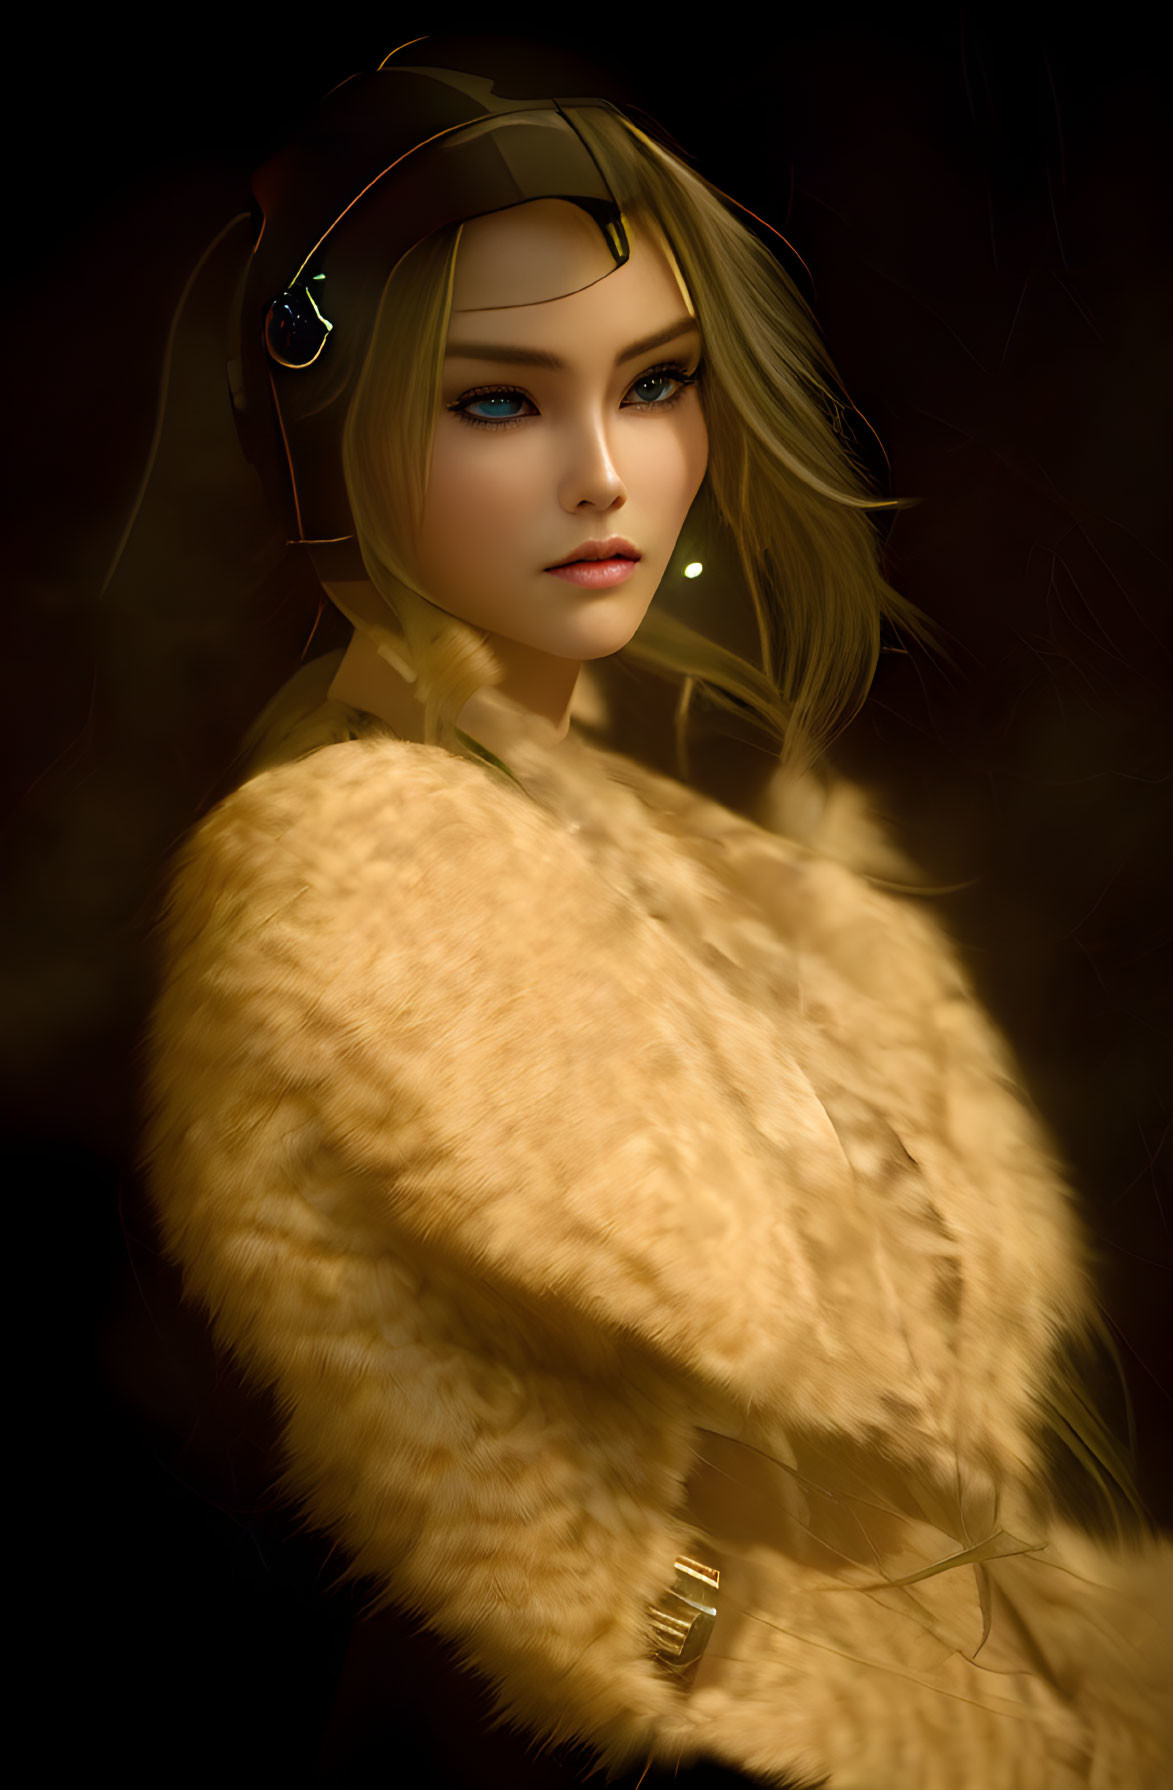 Digital artwork: Woman with blue eyes in helmet & beige coat on dark background